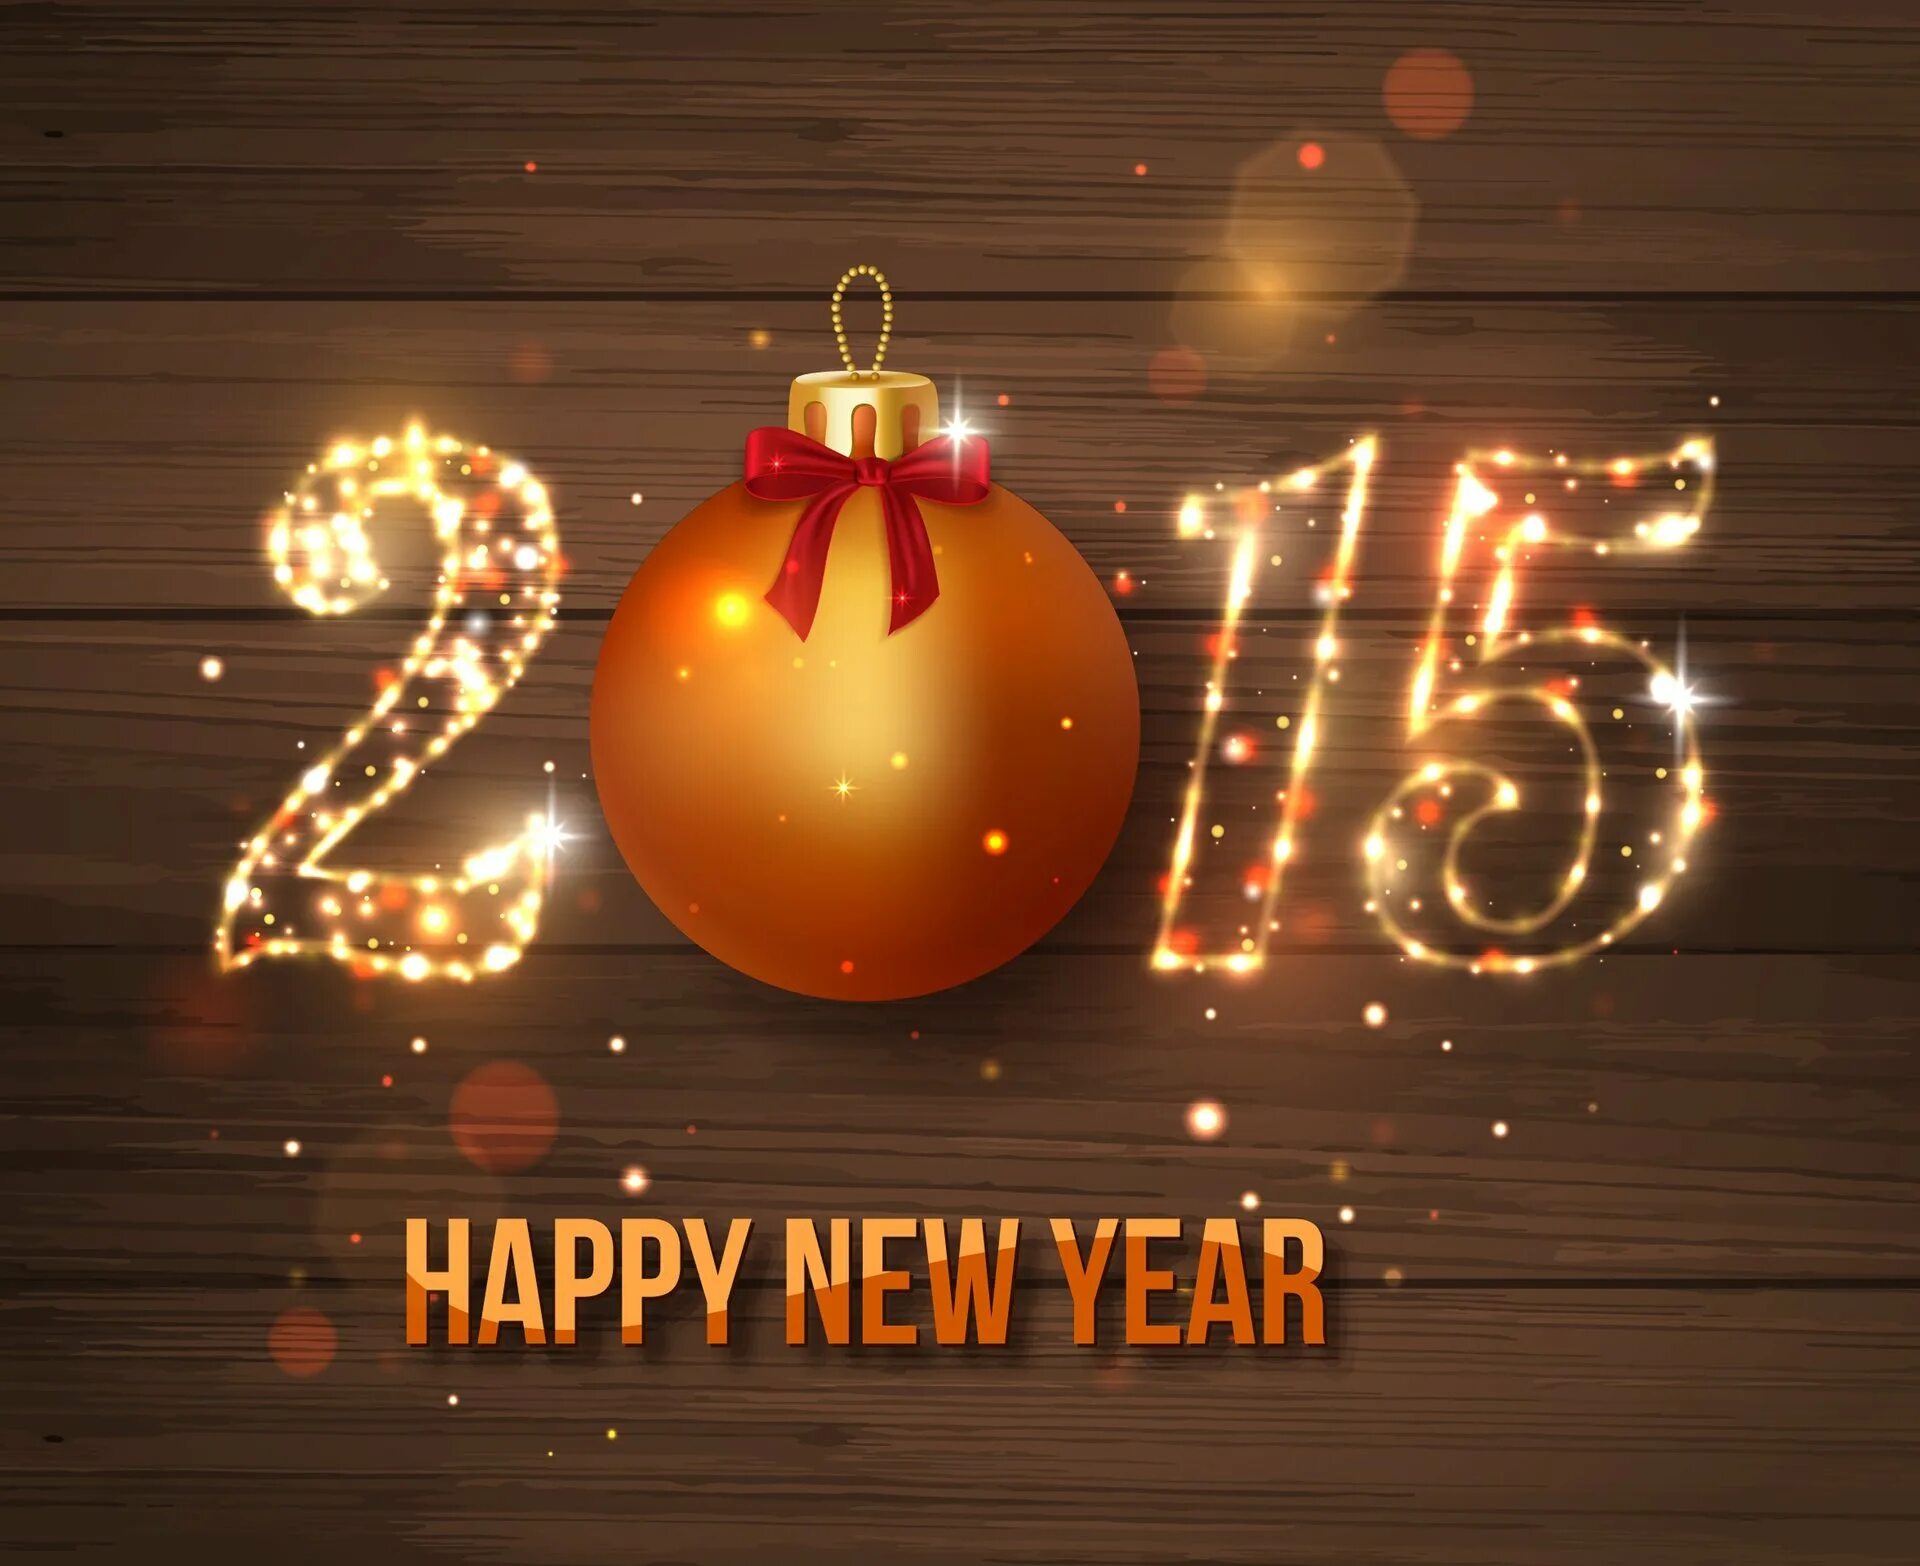 Фото 2015 года. Новый год 2015. Картинки с 2015 годом новогодние. Новый год 2015 картинки. Новогодняя заставка 2021 год.